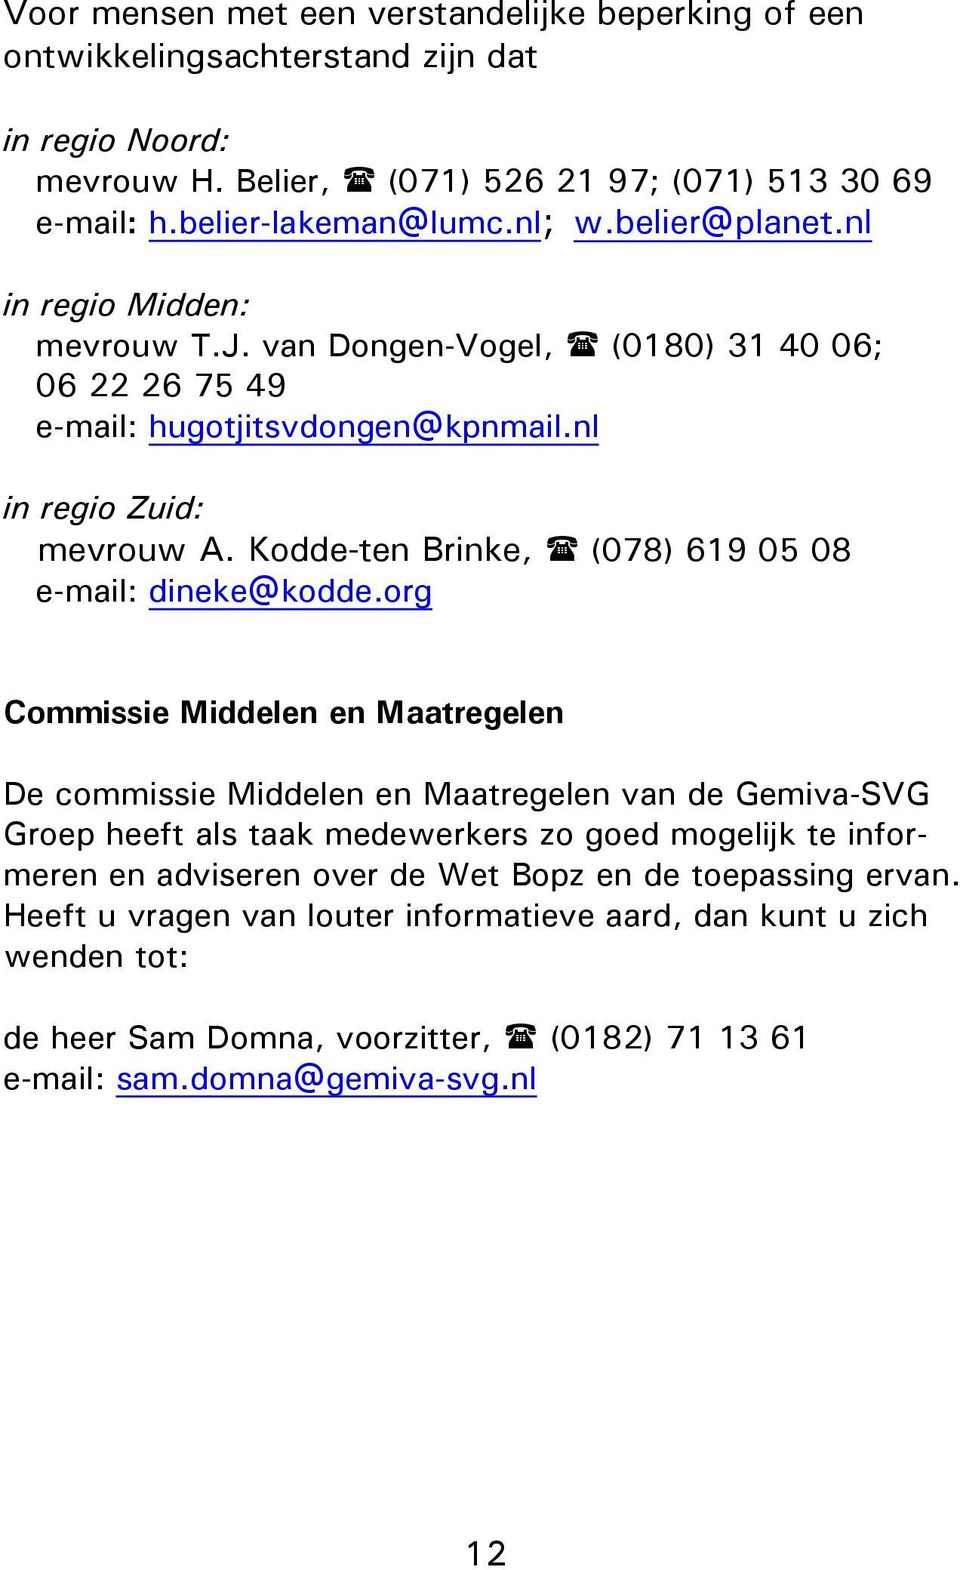 Kodde-ten Brinke, (078) 619 05 08 e-mail: dineke@kodde.